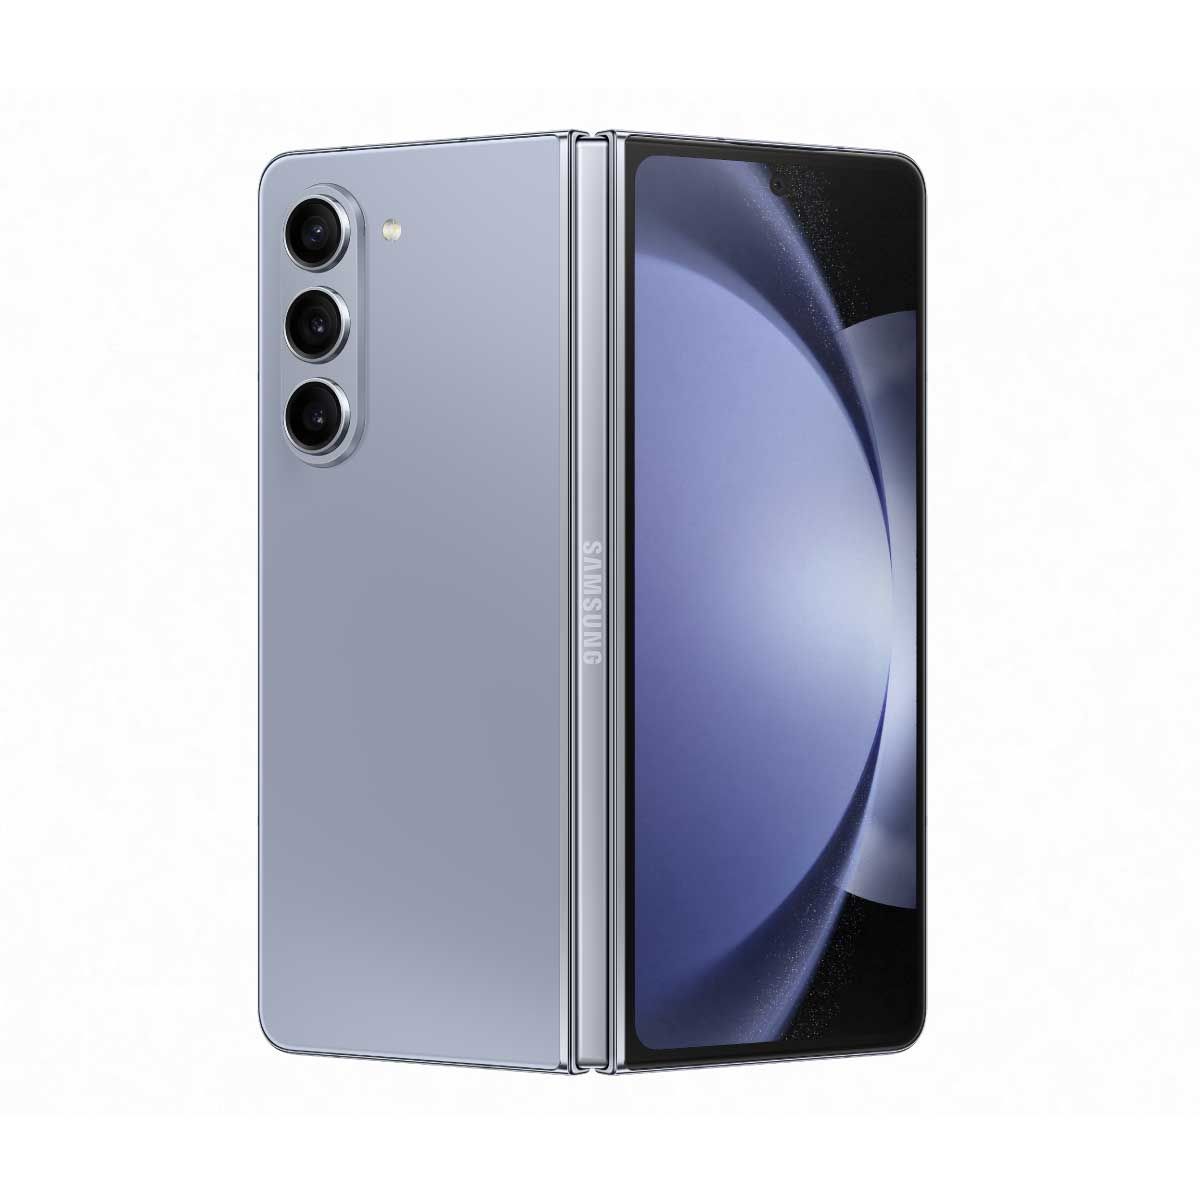 Samsung Galaxy Z Fold5 ( RAM 12 GB / ROM 512 GB)